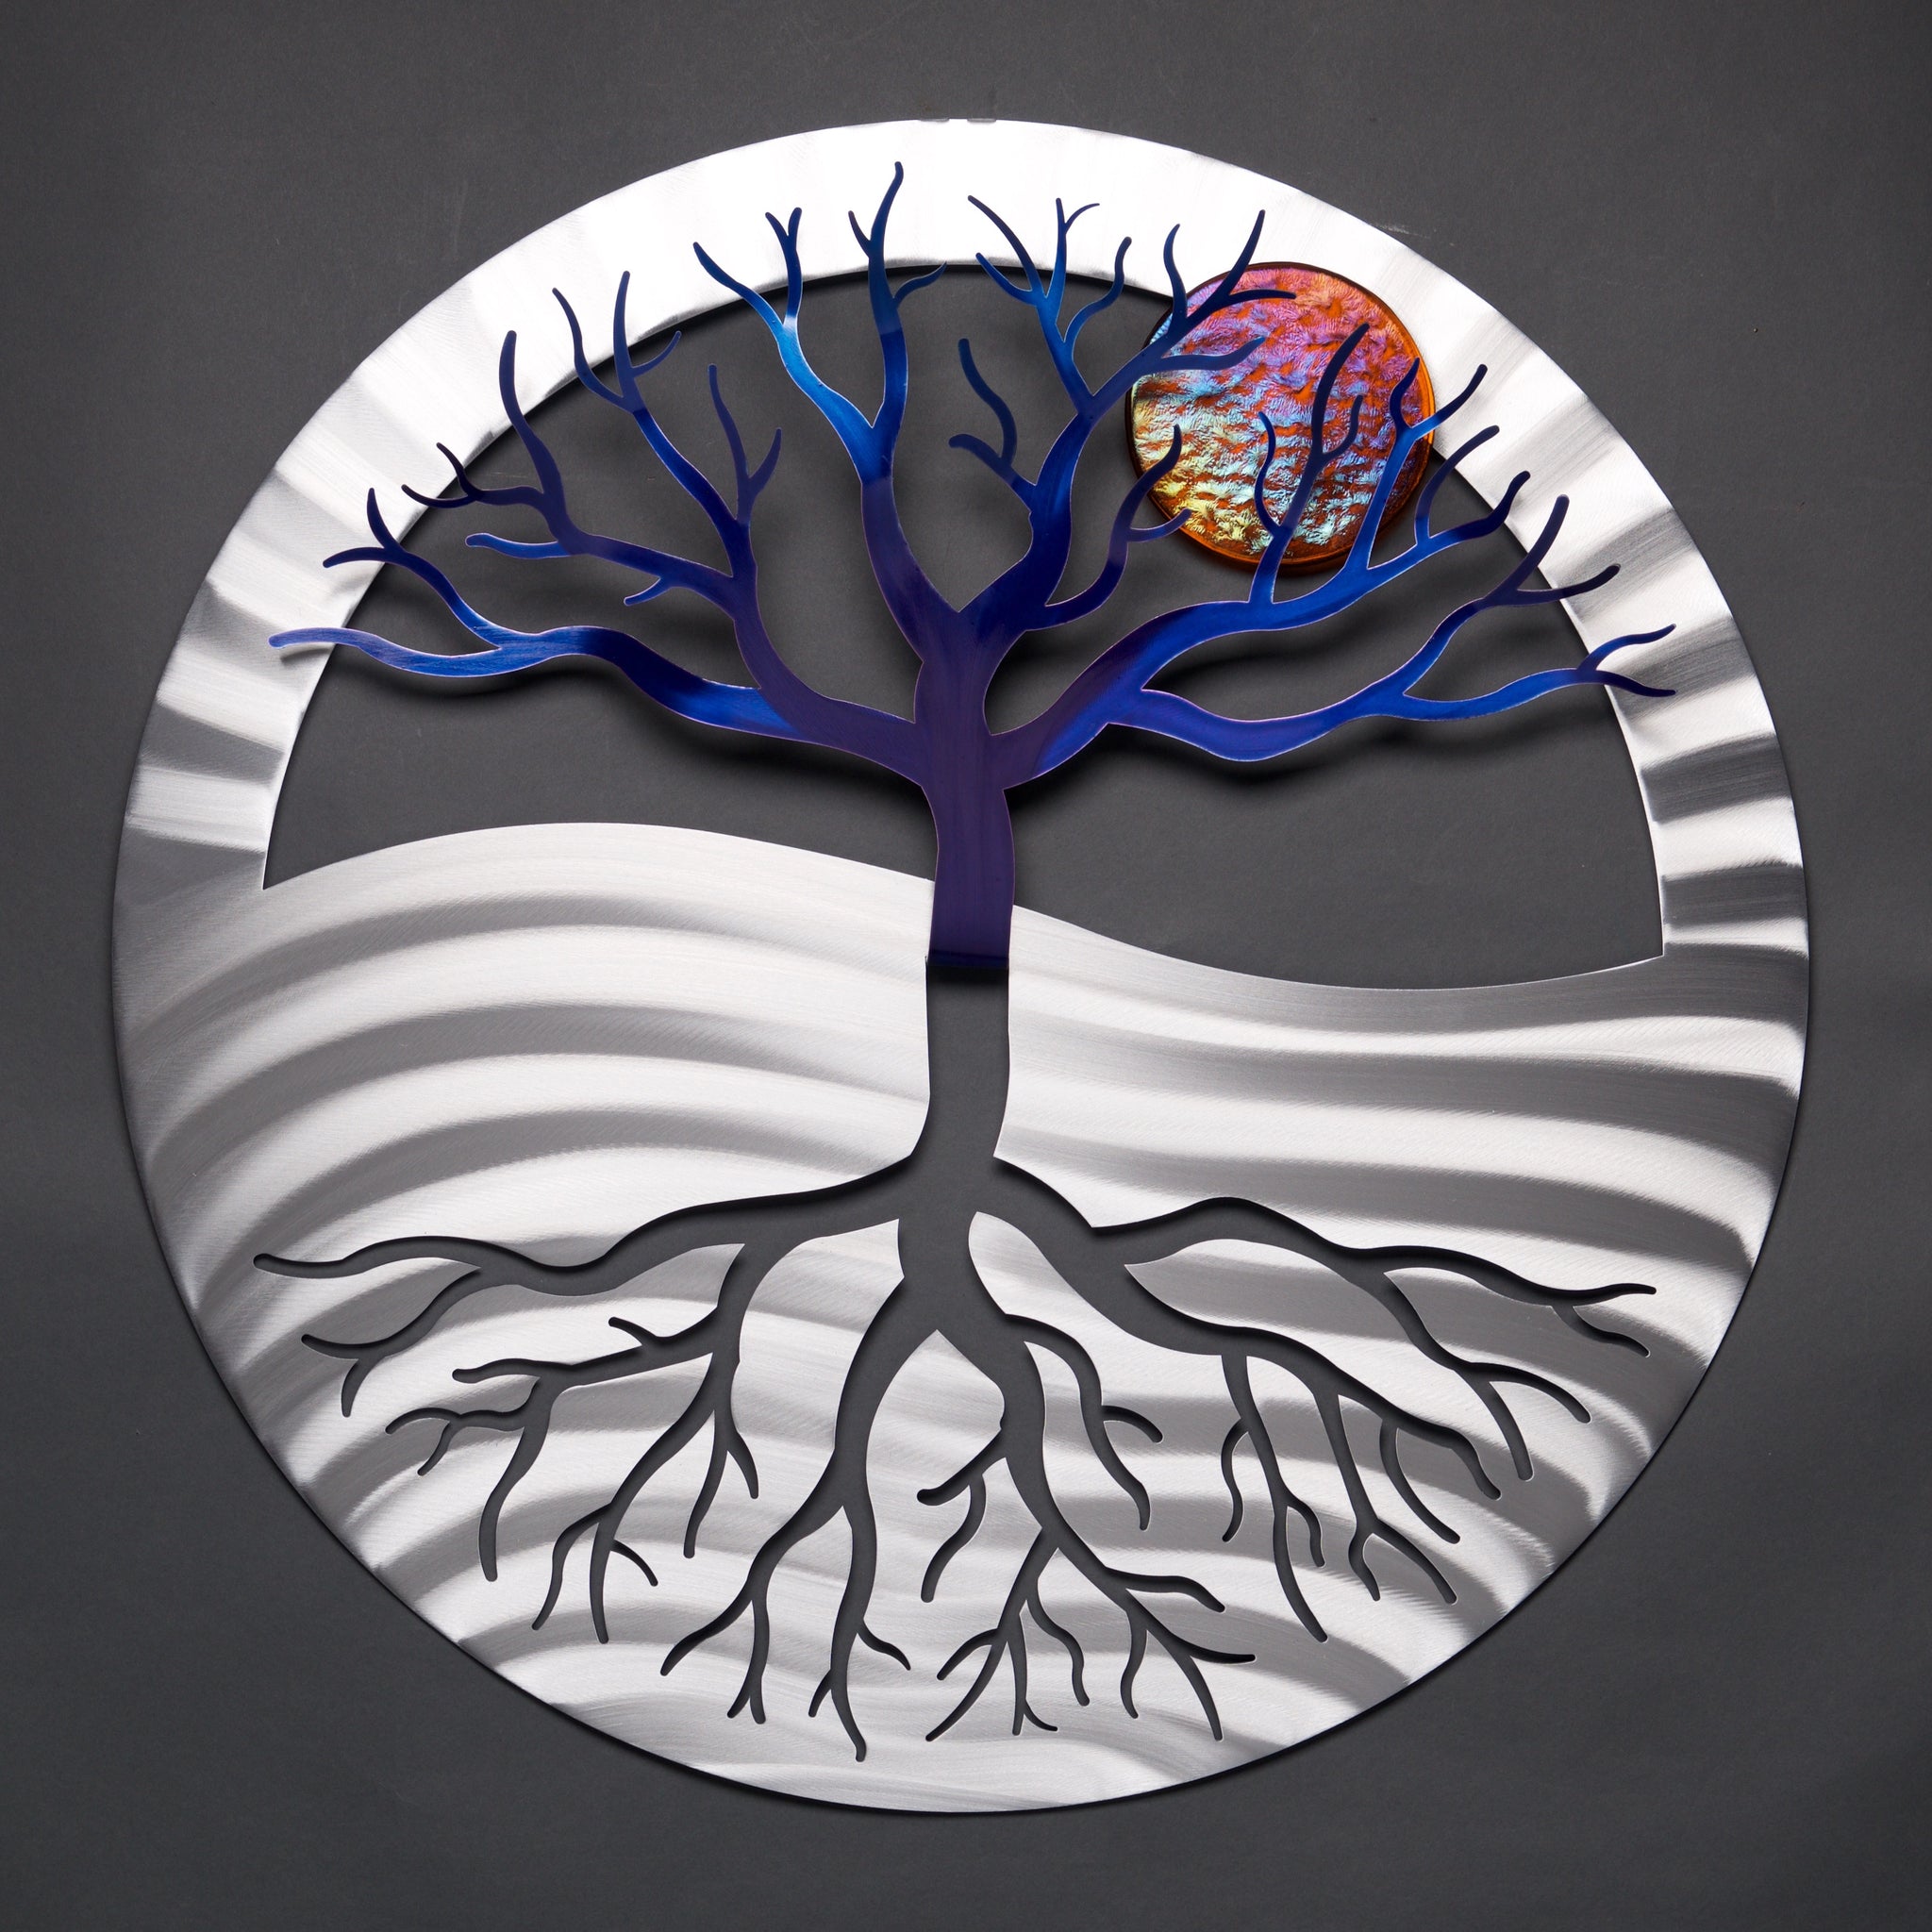 Tree of Life - by Sondra Gerber - ©Sondra Gerber - Metal Petal Art LLC